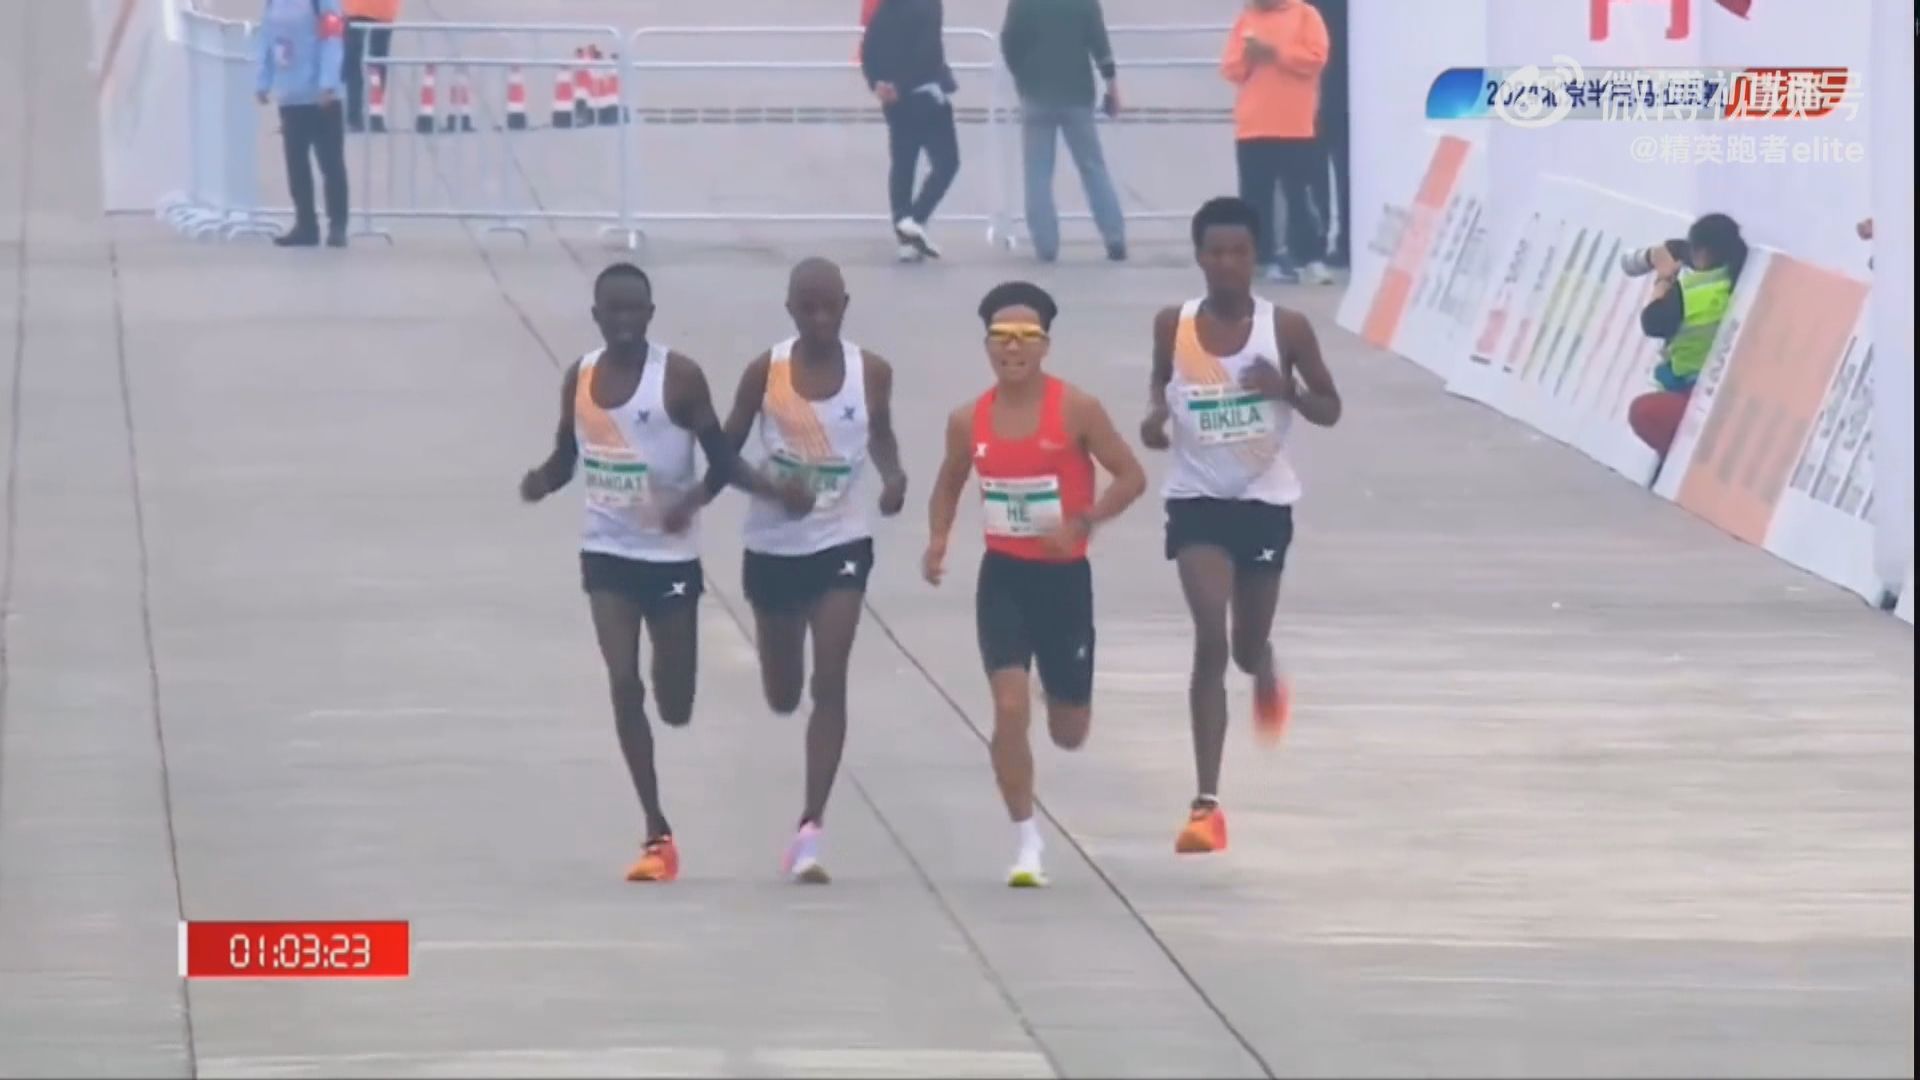 北京半馬賽何杰奪冠 三非洲跑手被質疑刻意放慢速度